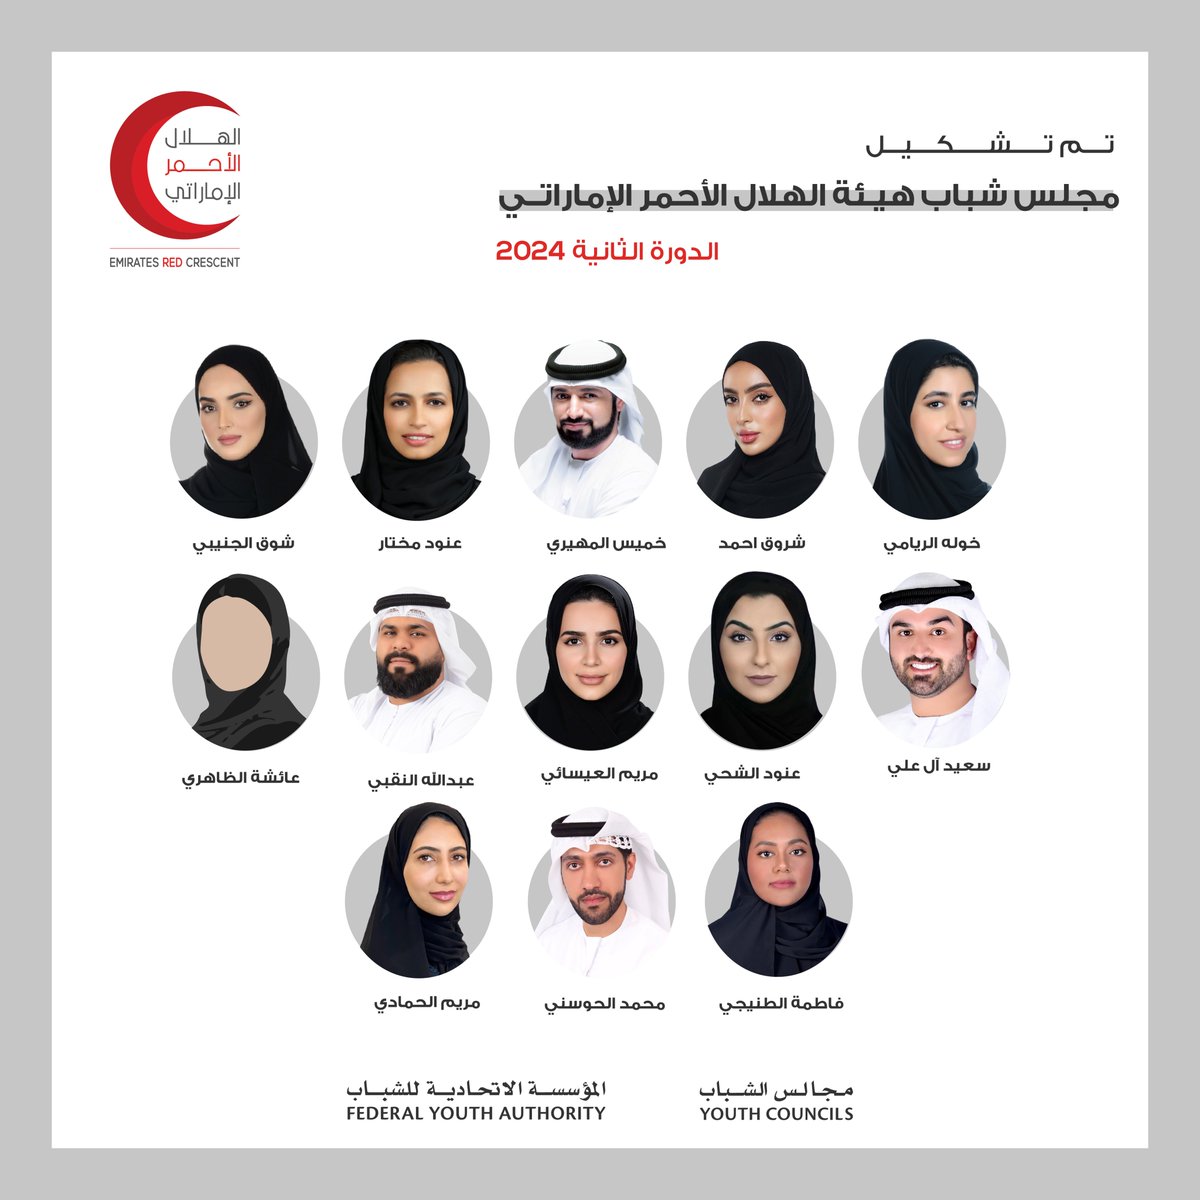 نعلن بكل فخر عن تشكيل مجلس شباب هيئة الهلال الأحمر الإماراتي (الدورة الثانية) لعام 2024، ونرجو لهم التوفيق في تحقيق أهدافهم لخدمة المجتمع والوطن.